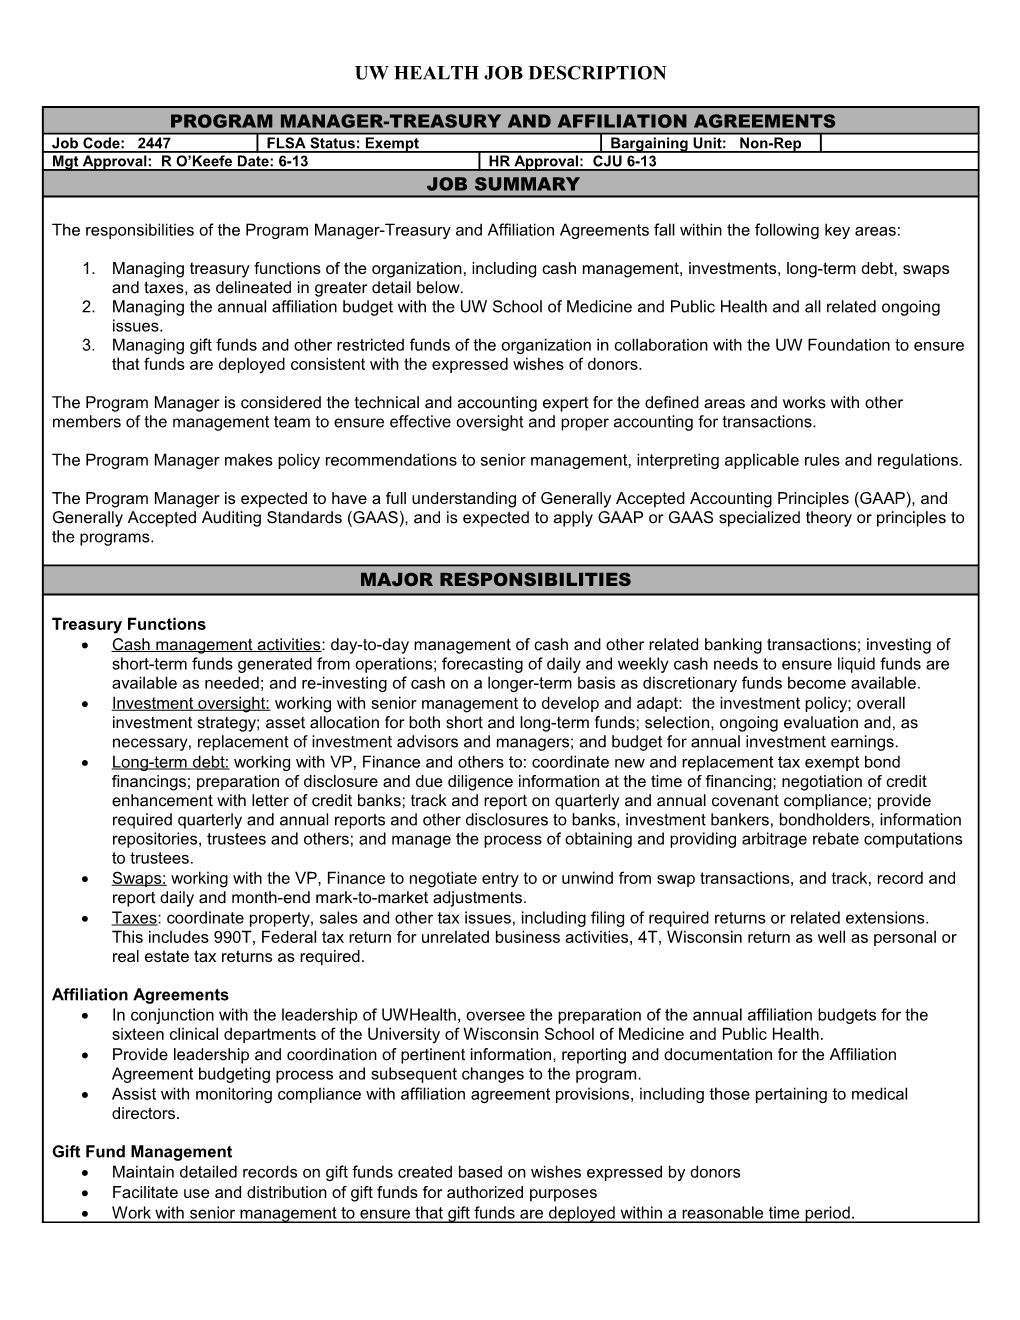 Job Description for Job Title s1